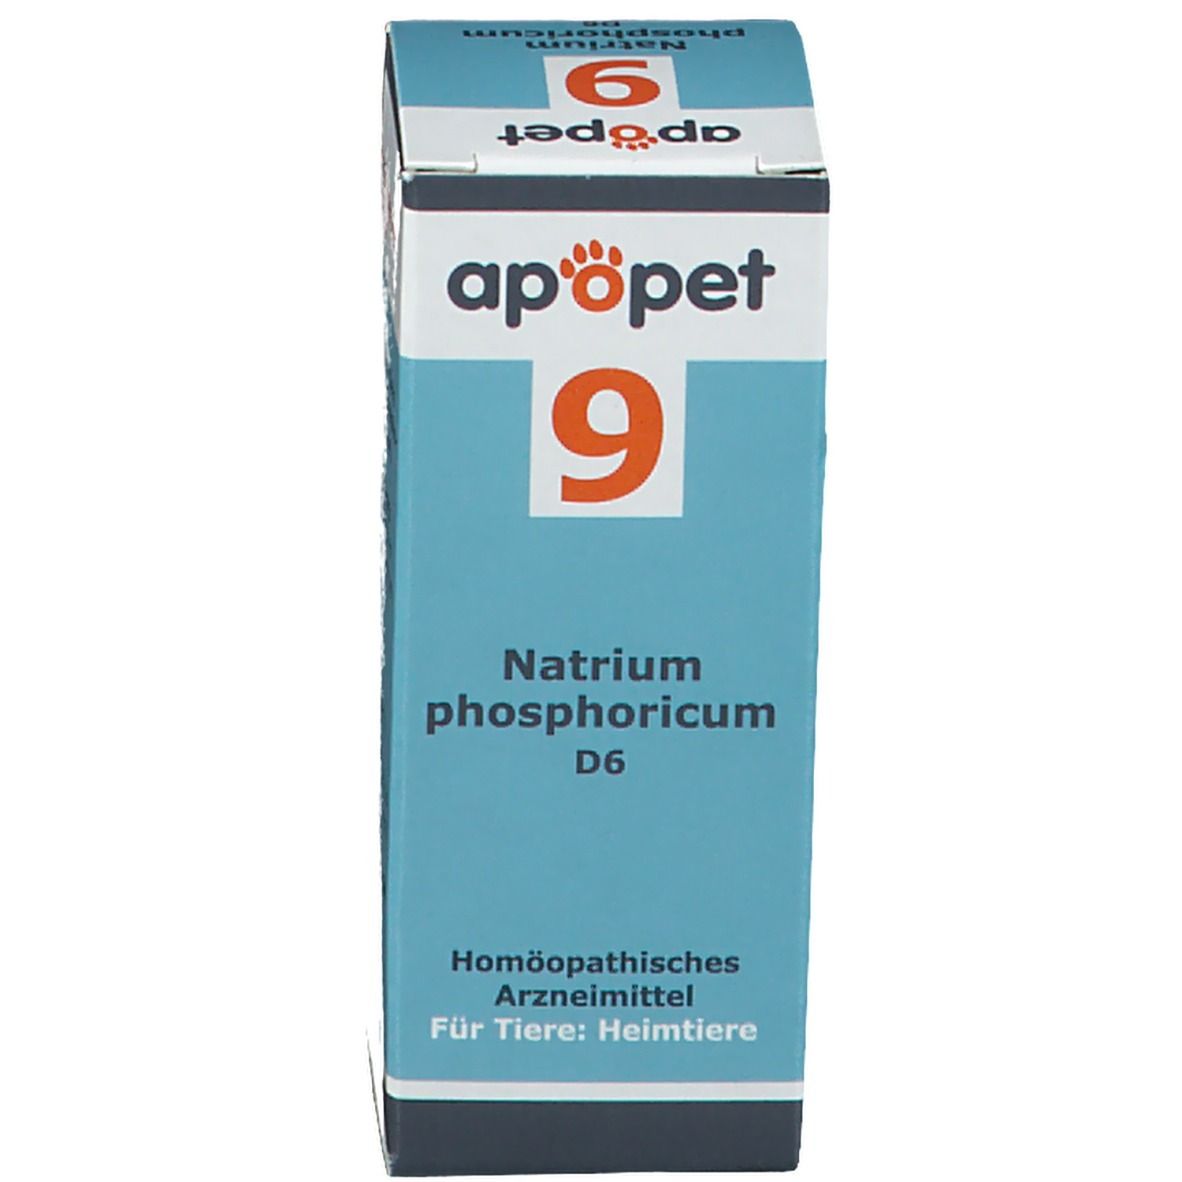 apopet® Schüßler Salz Nr. 9 Natrium phosphoricum D6 ad us. vet.